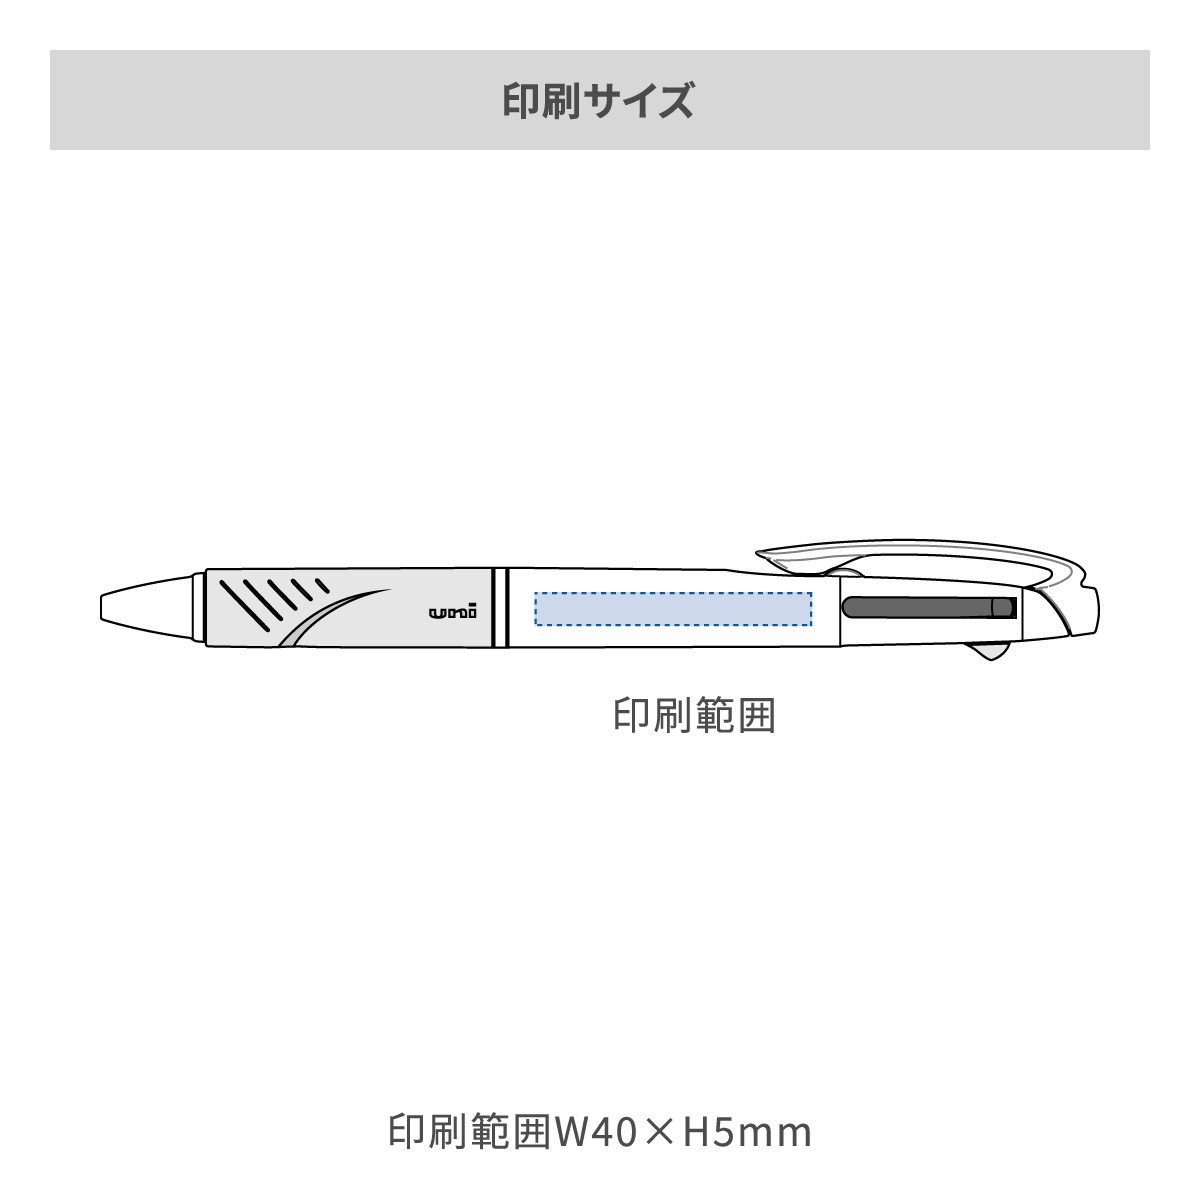 三菱鉛筆 ジェットストリーム 3色ボールペン AGピュア抗菌 白軸 0.7mmの名入れ範囲